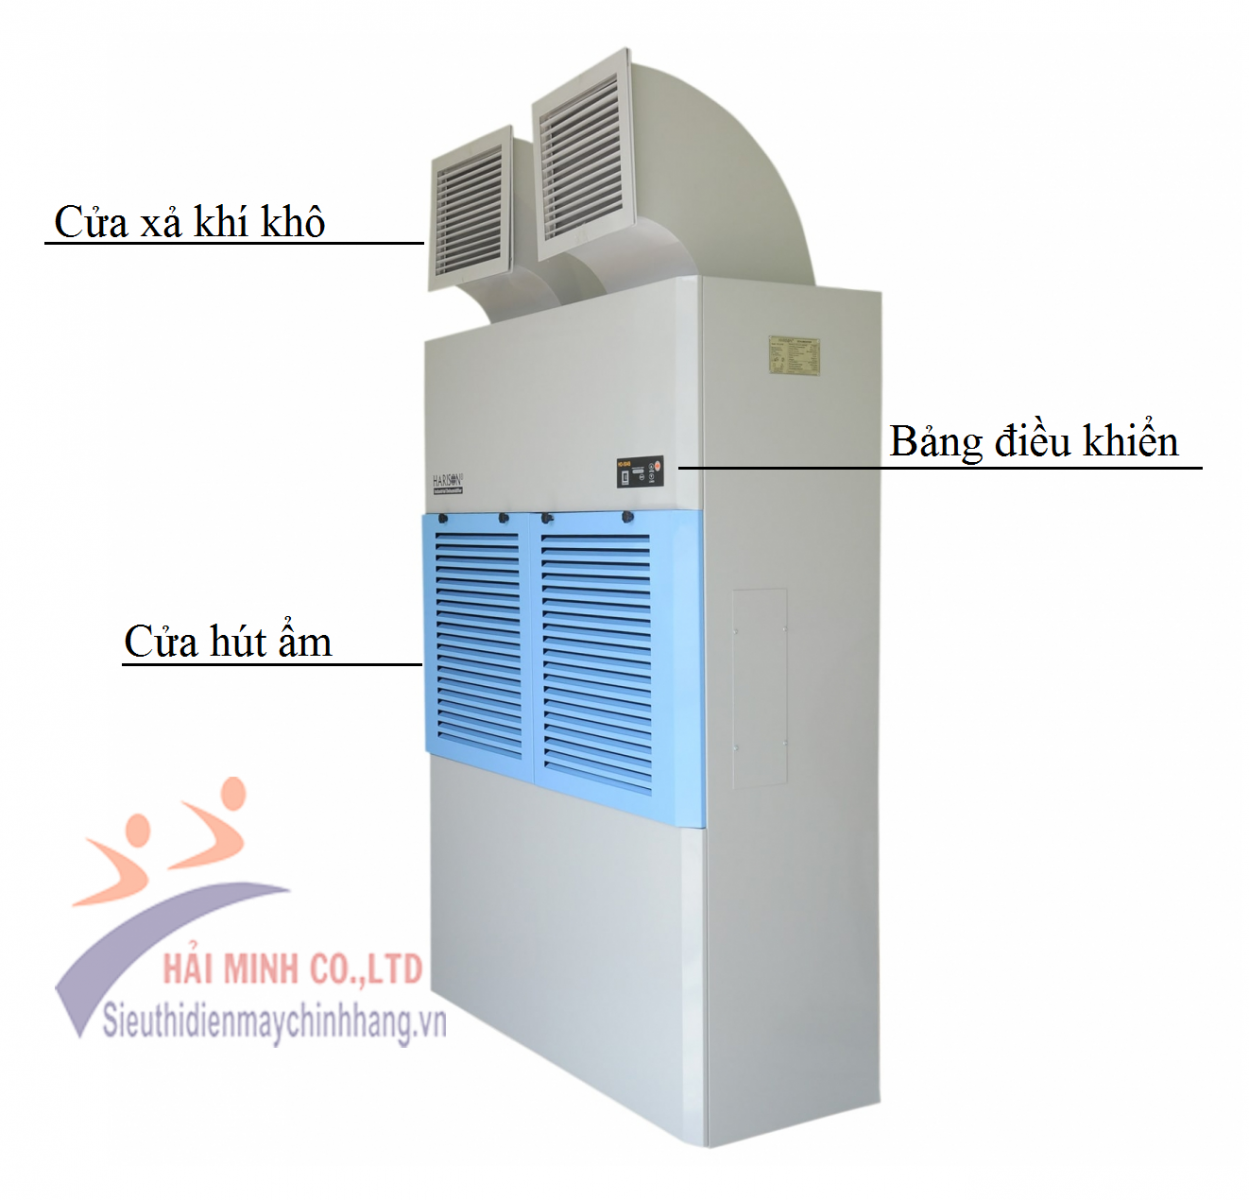 So sánh máy hút ẩm công nghiệp Harison HD-504B và HD-504PS